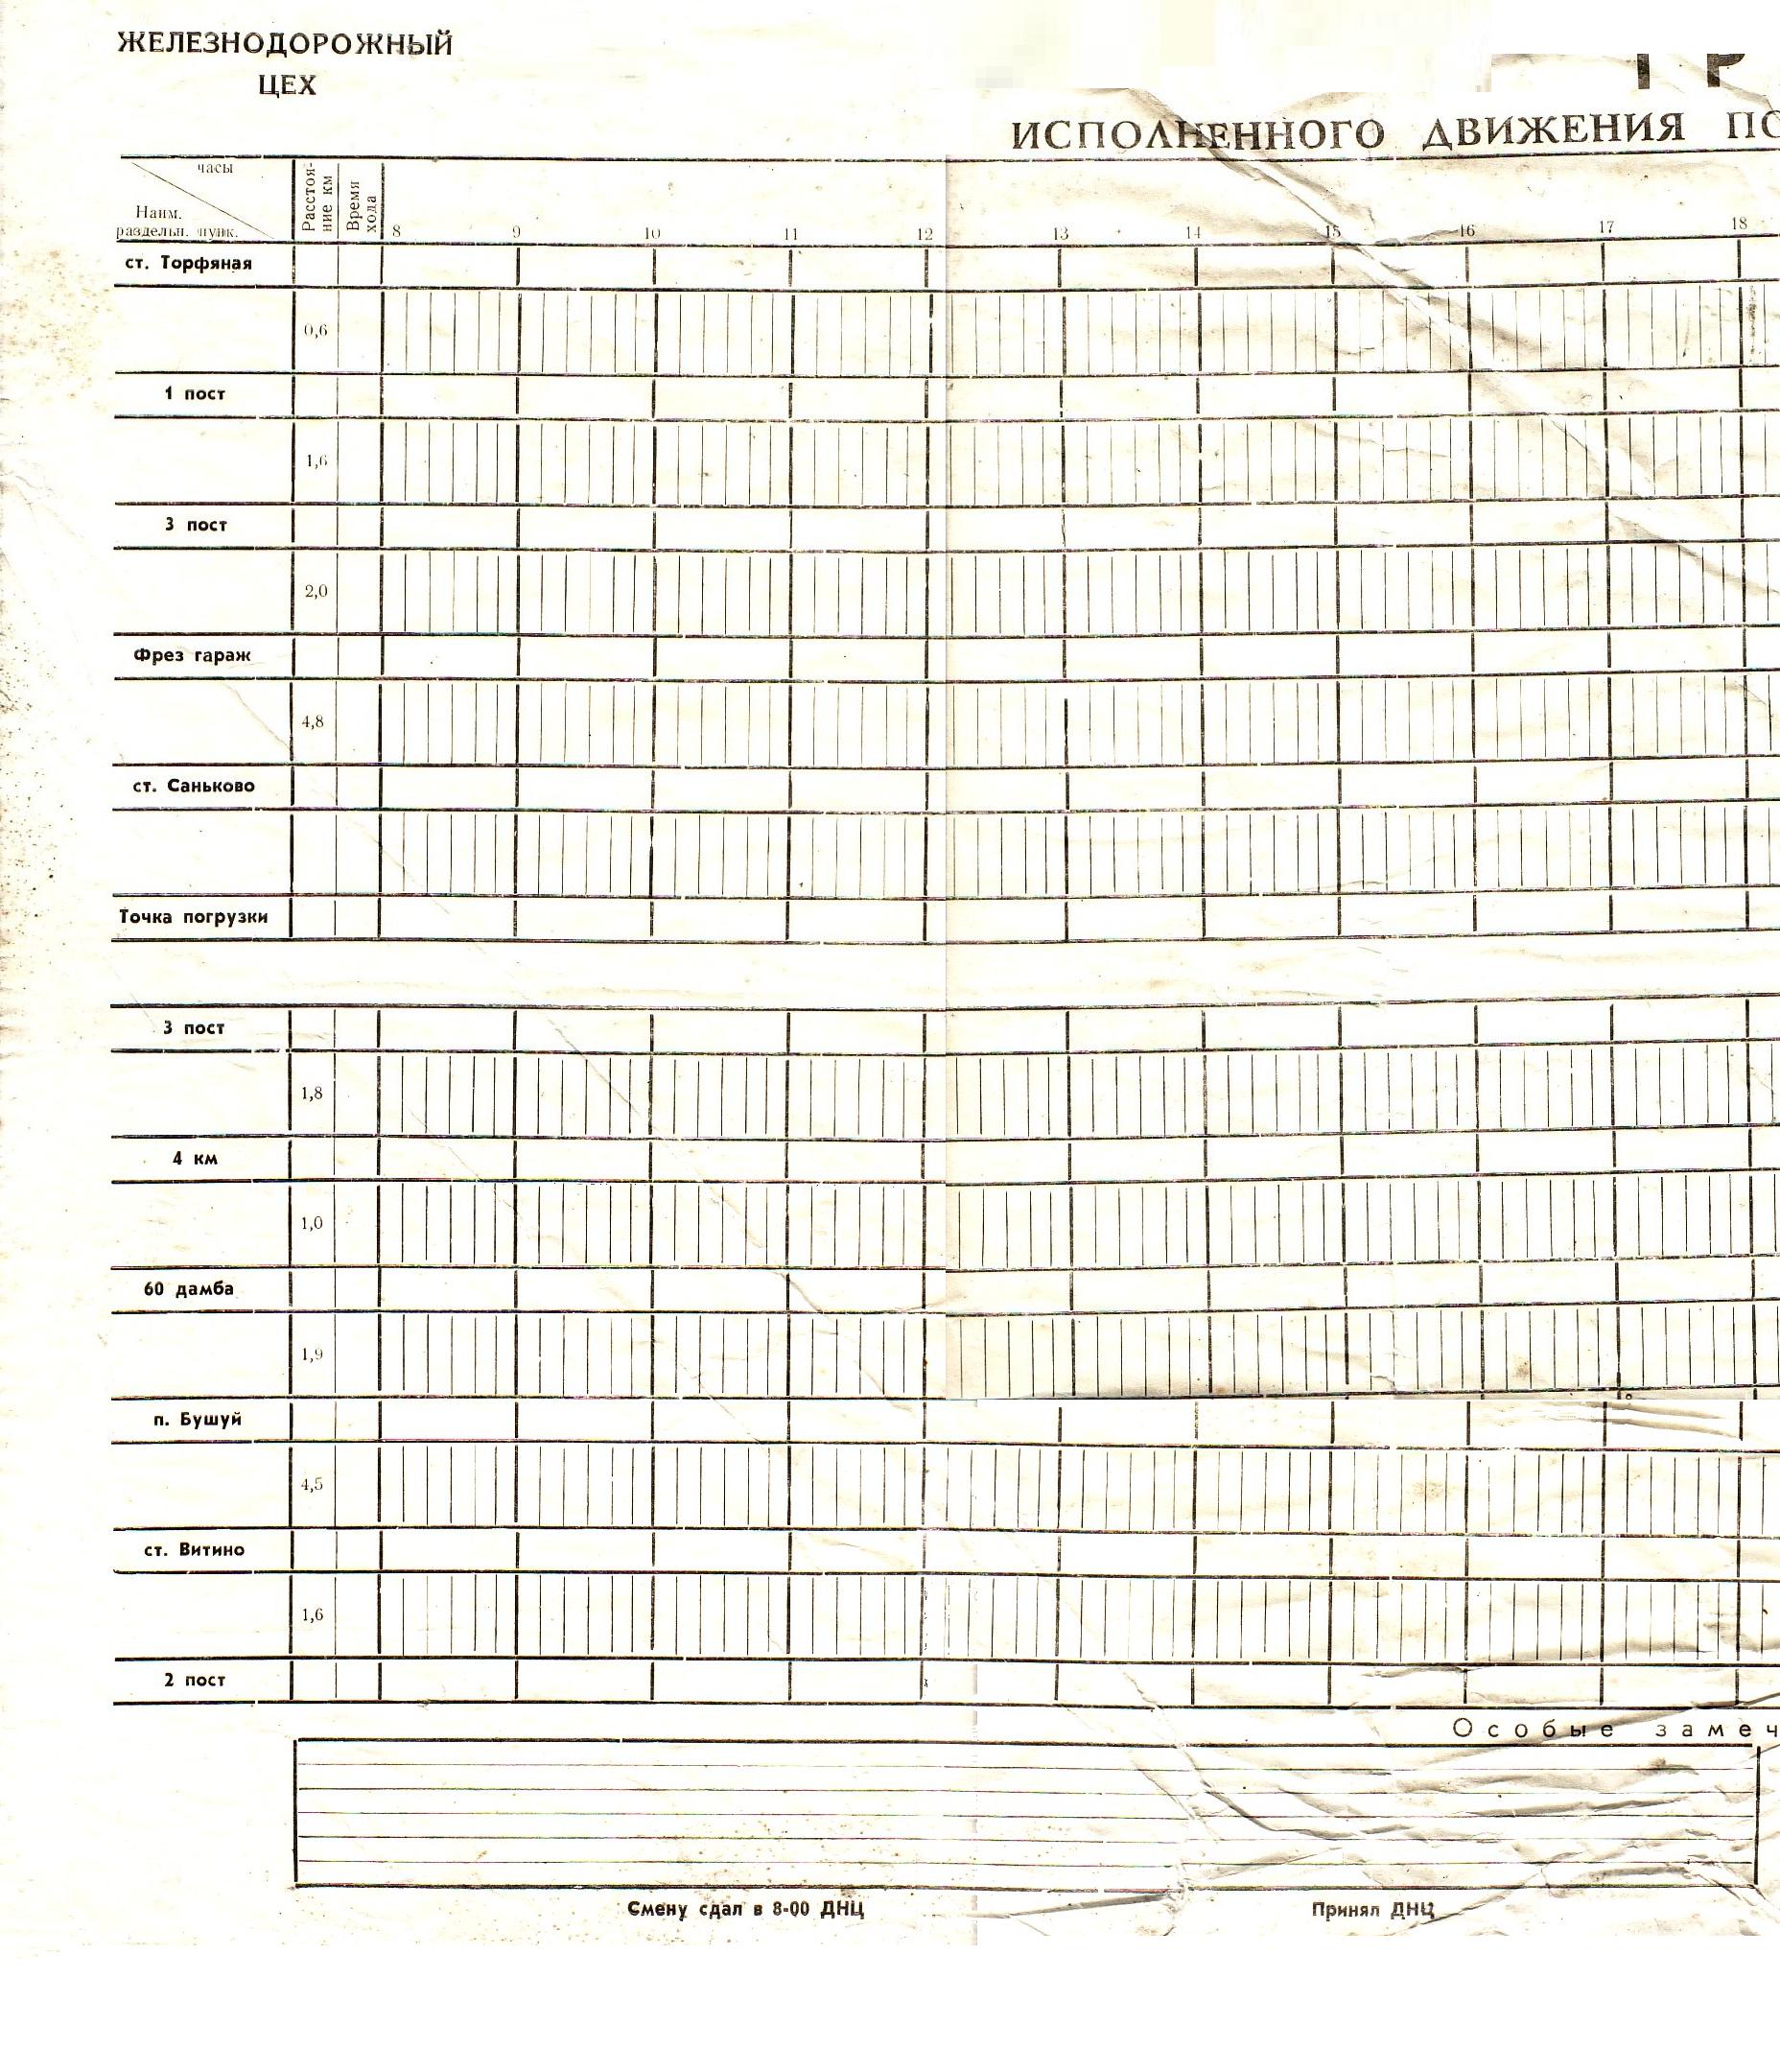 Узкоколейная железная дорога Алфёровского торфопредприятия - графики исполненного движения поездов